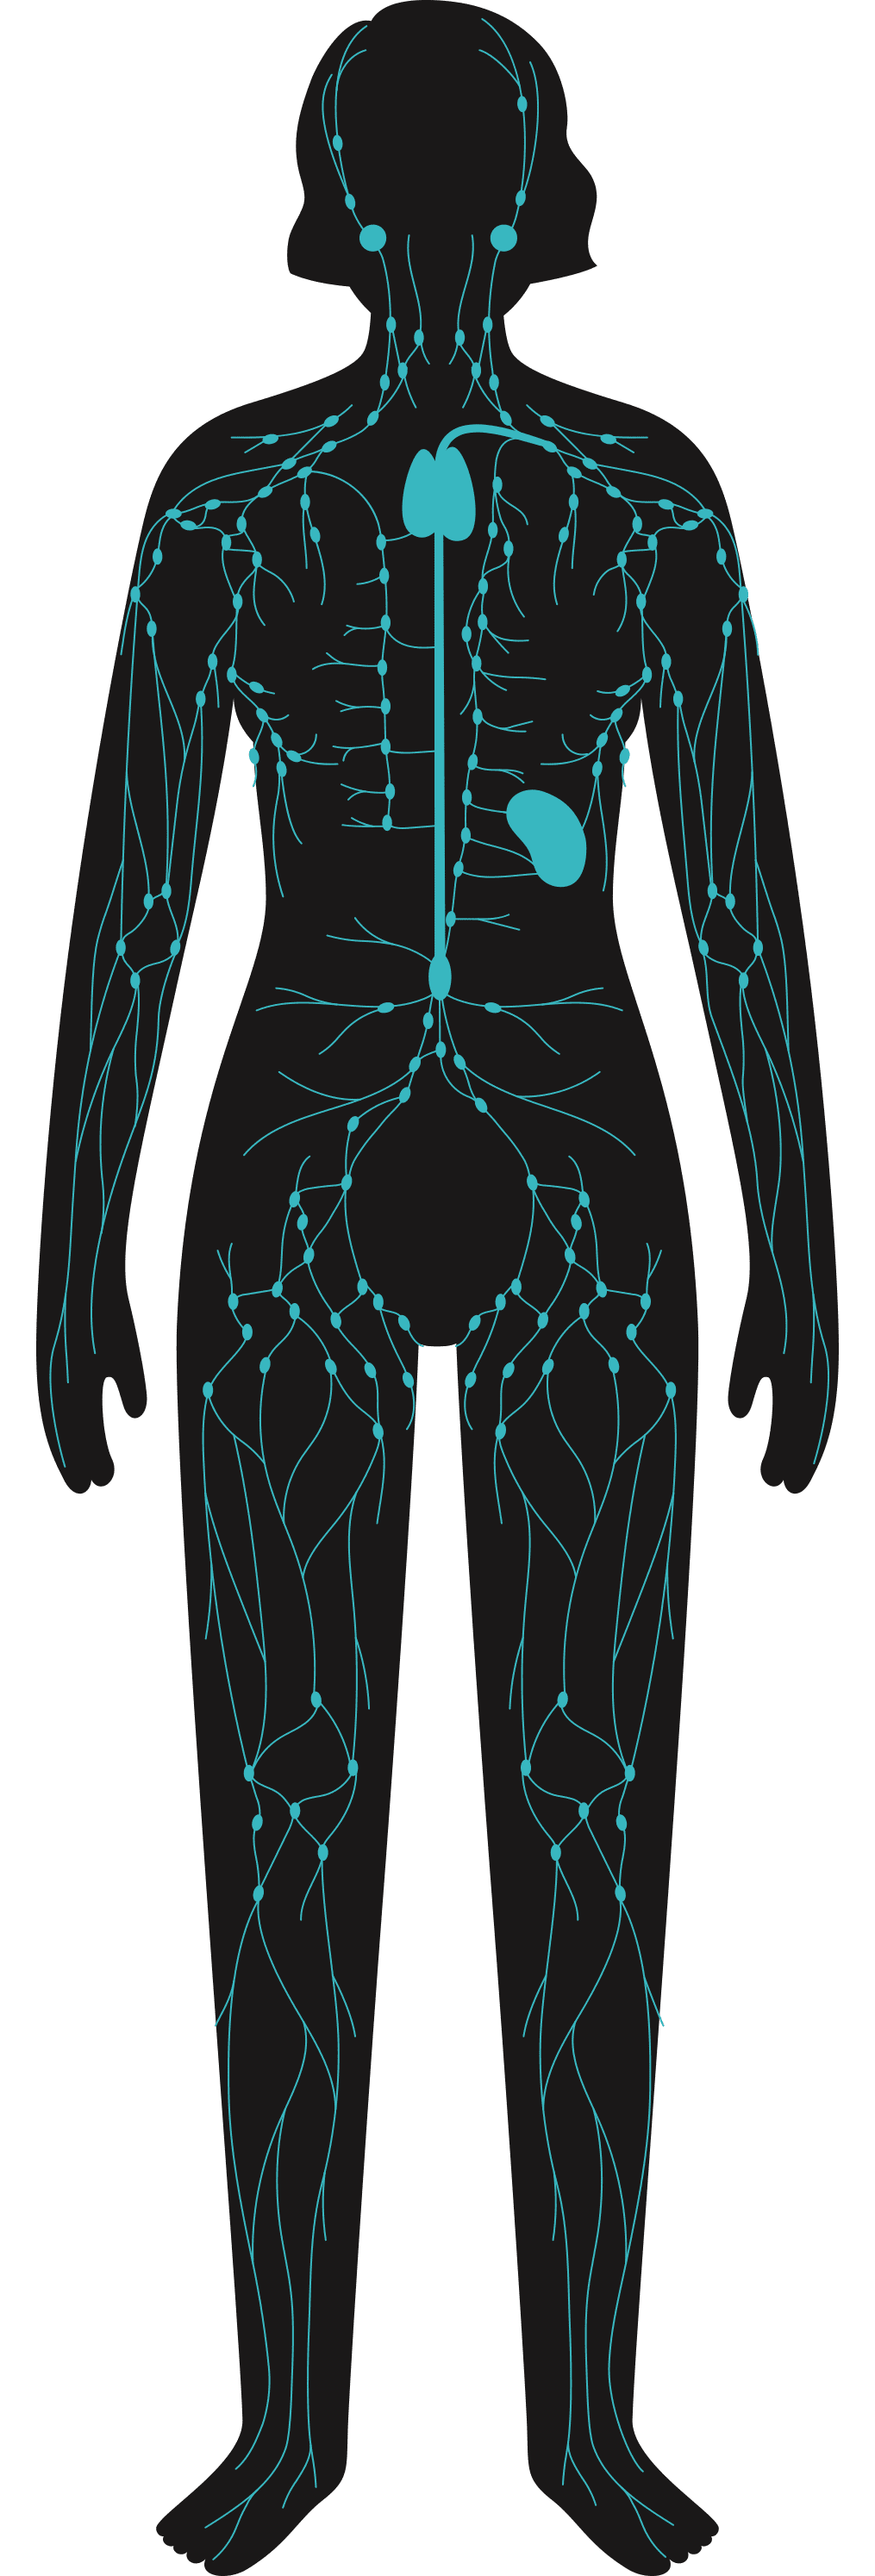 Dessin corps humain - service MCT Douleur chronique